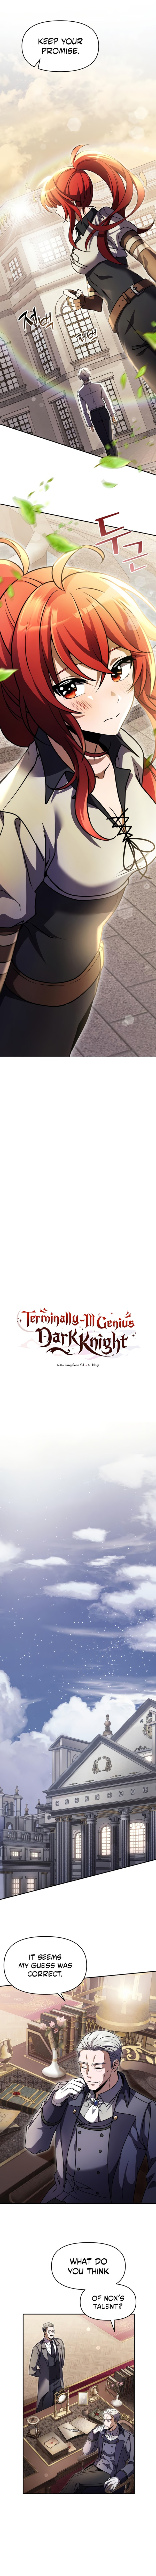 Terminally Ill Genius Dark Knight 8 6